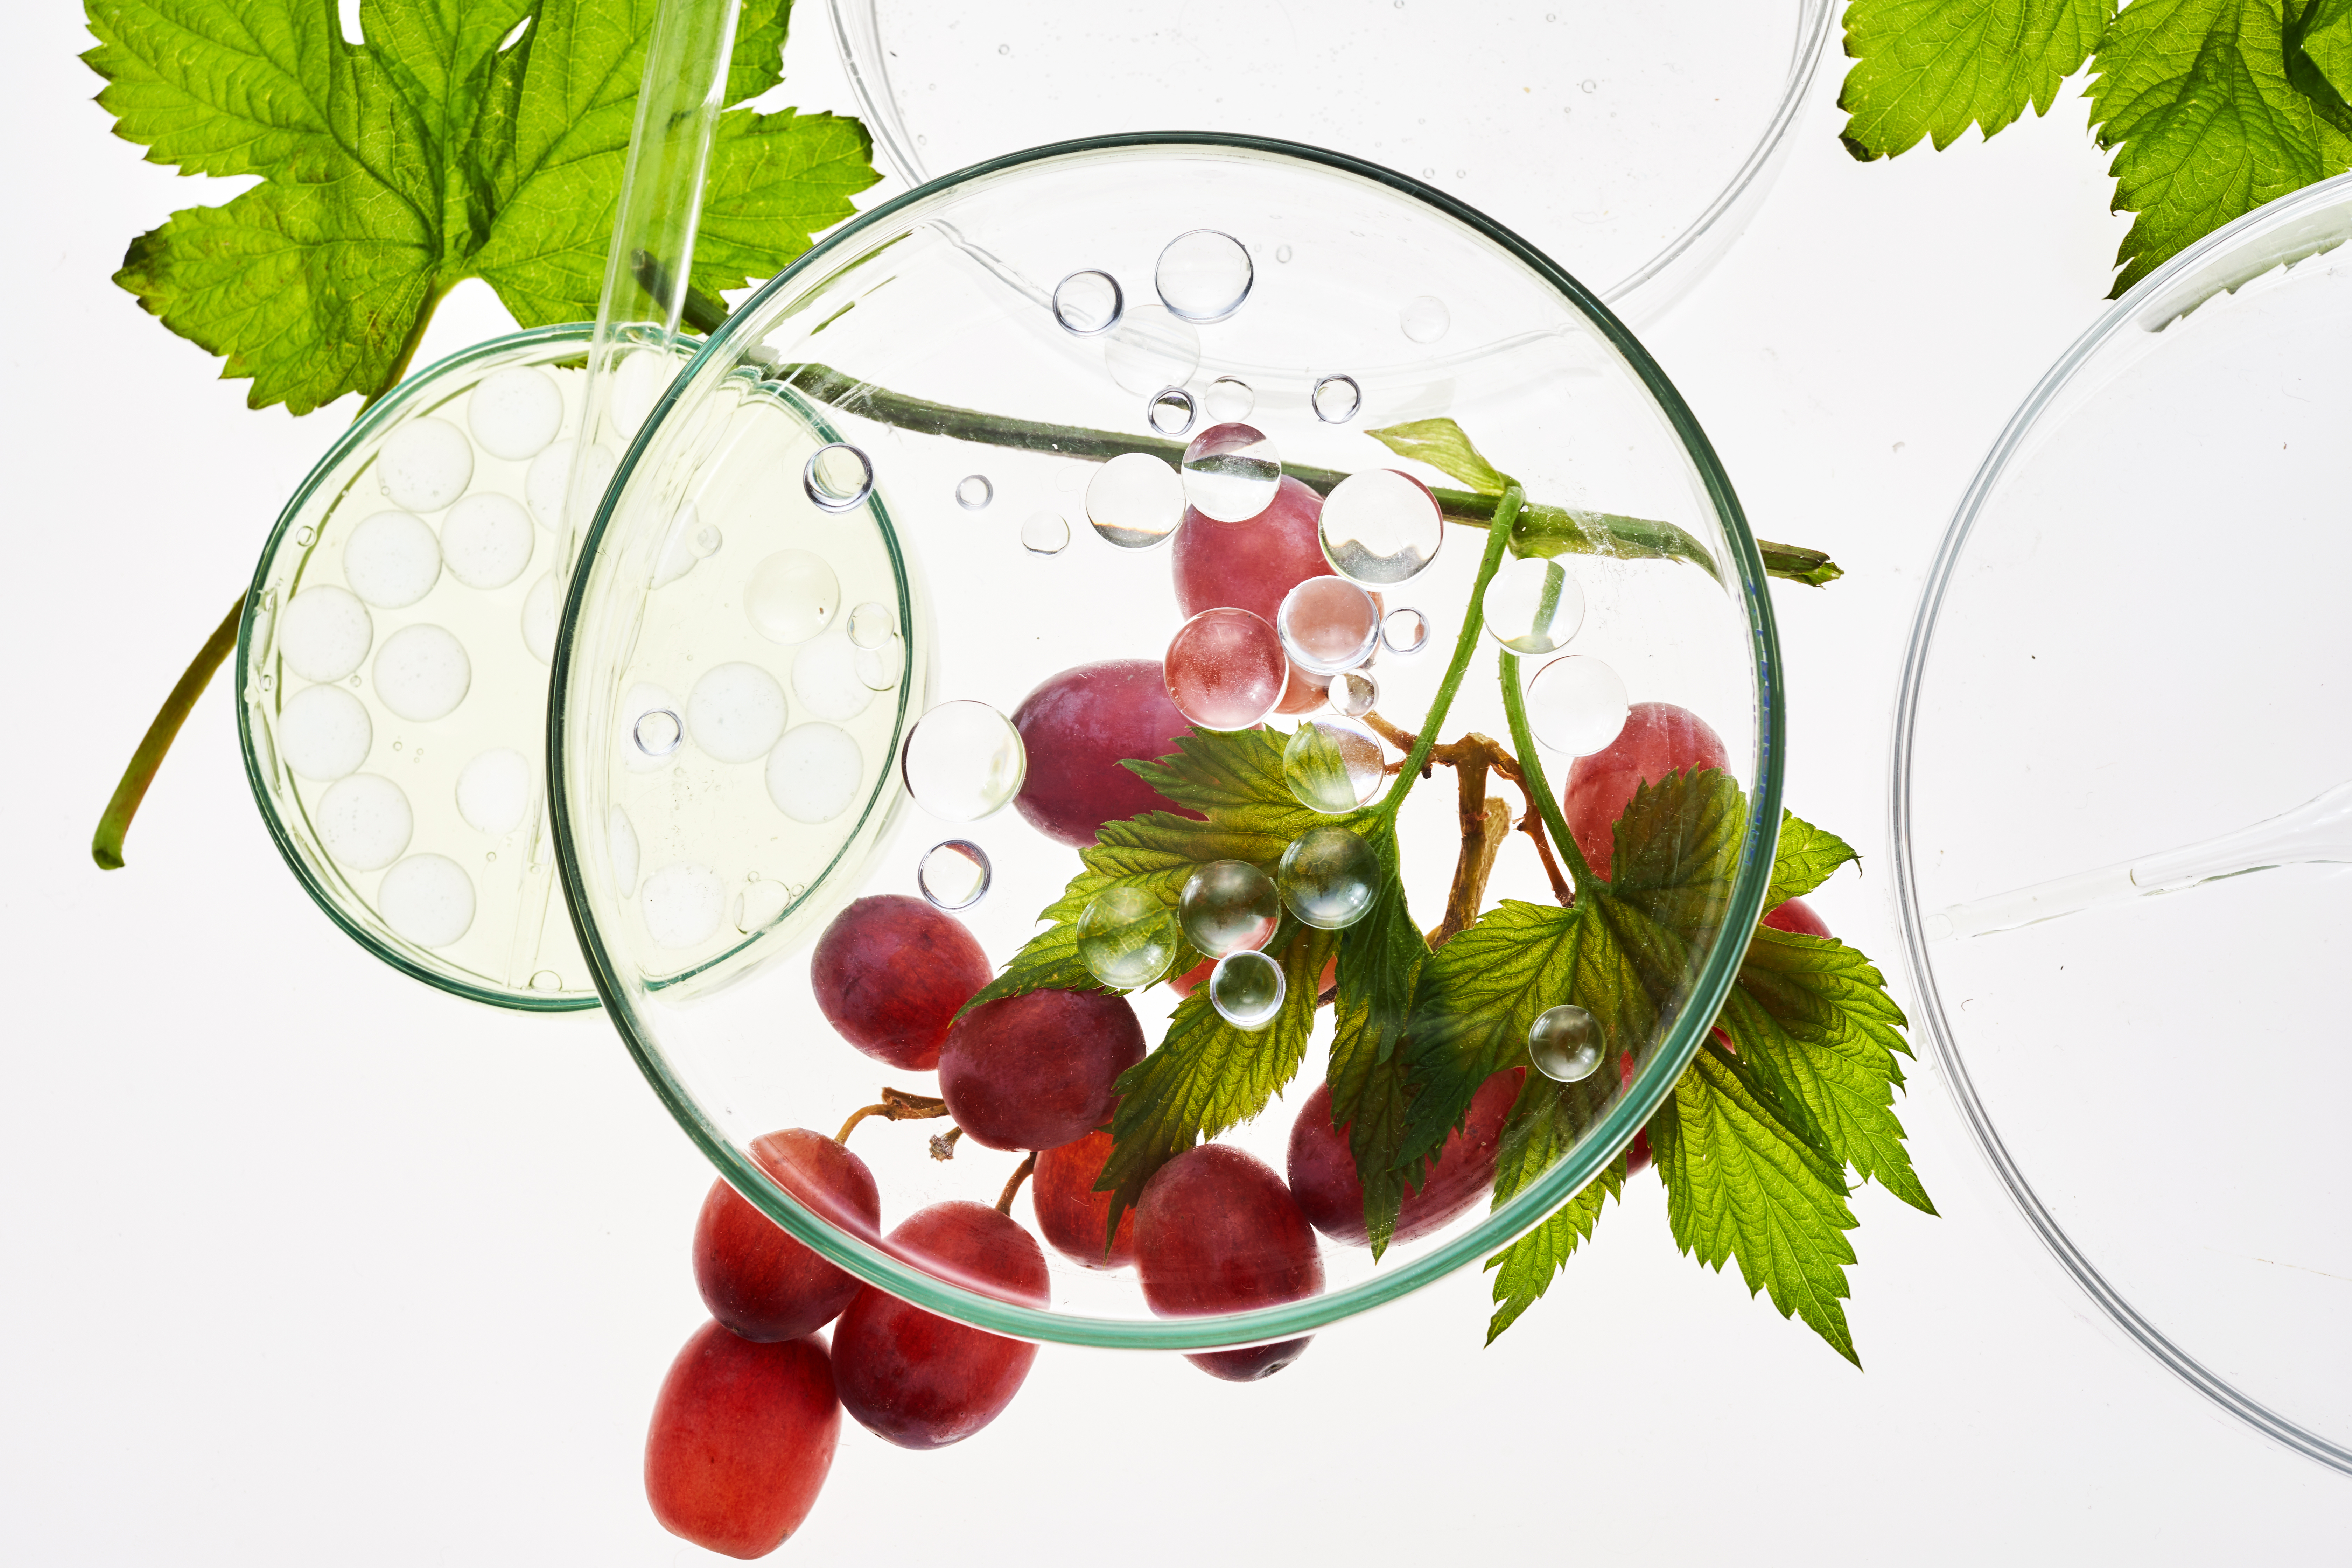 L'étude démontre l’impact bénéfique des antioxydants du raisin sur le métabolisme et la durée de vie, notamment (Visuel Adobe Stock 436162726).